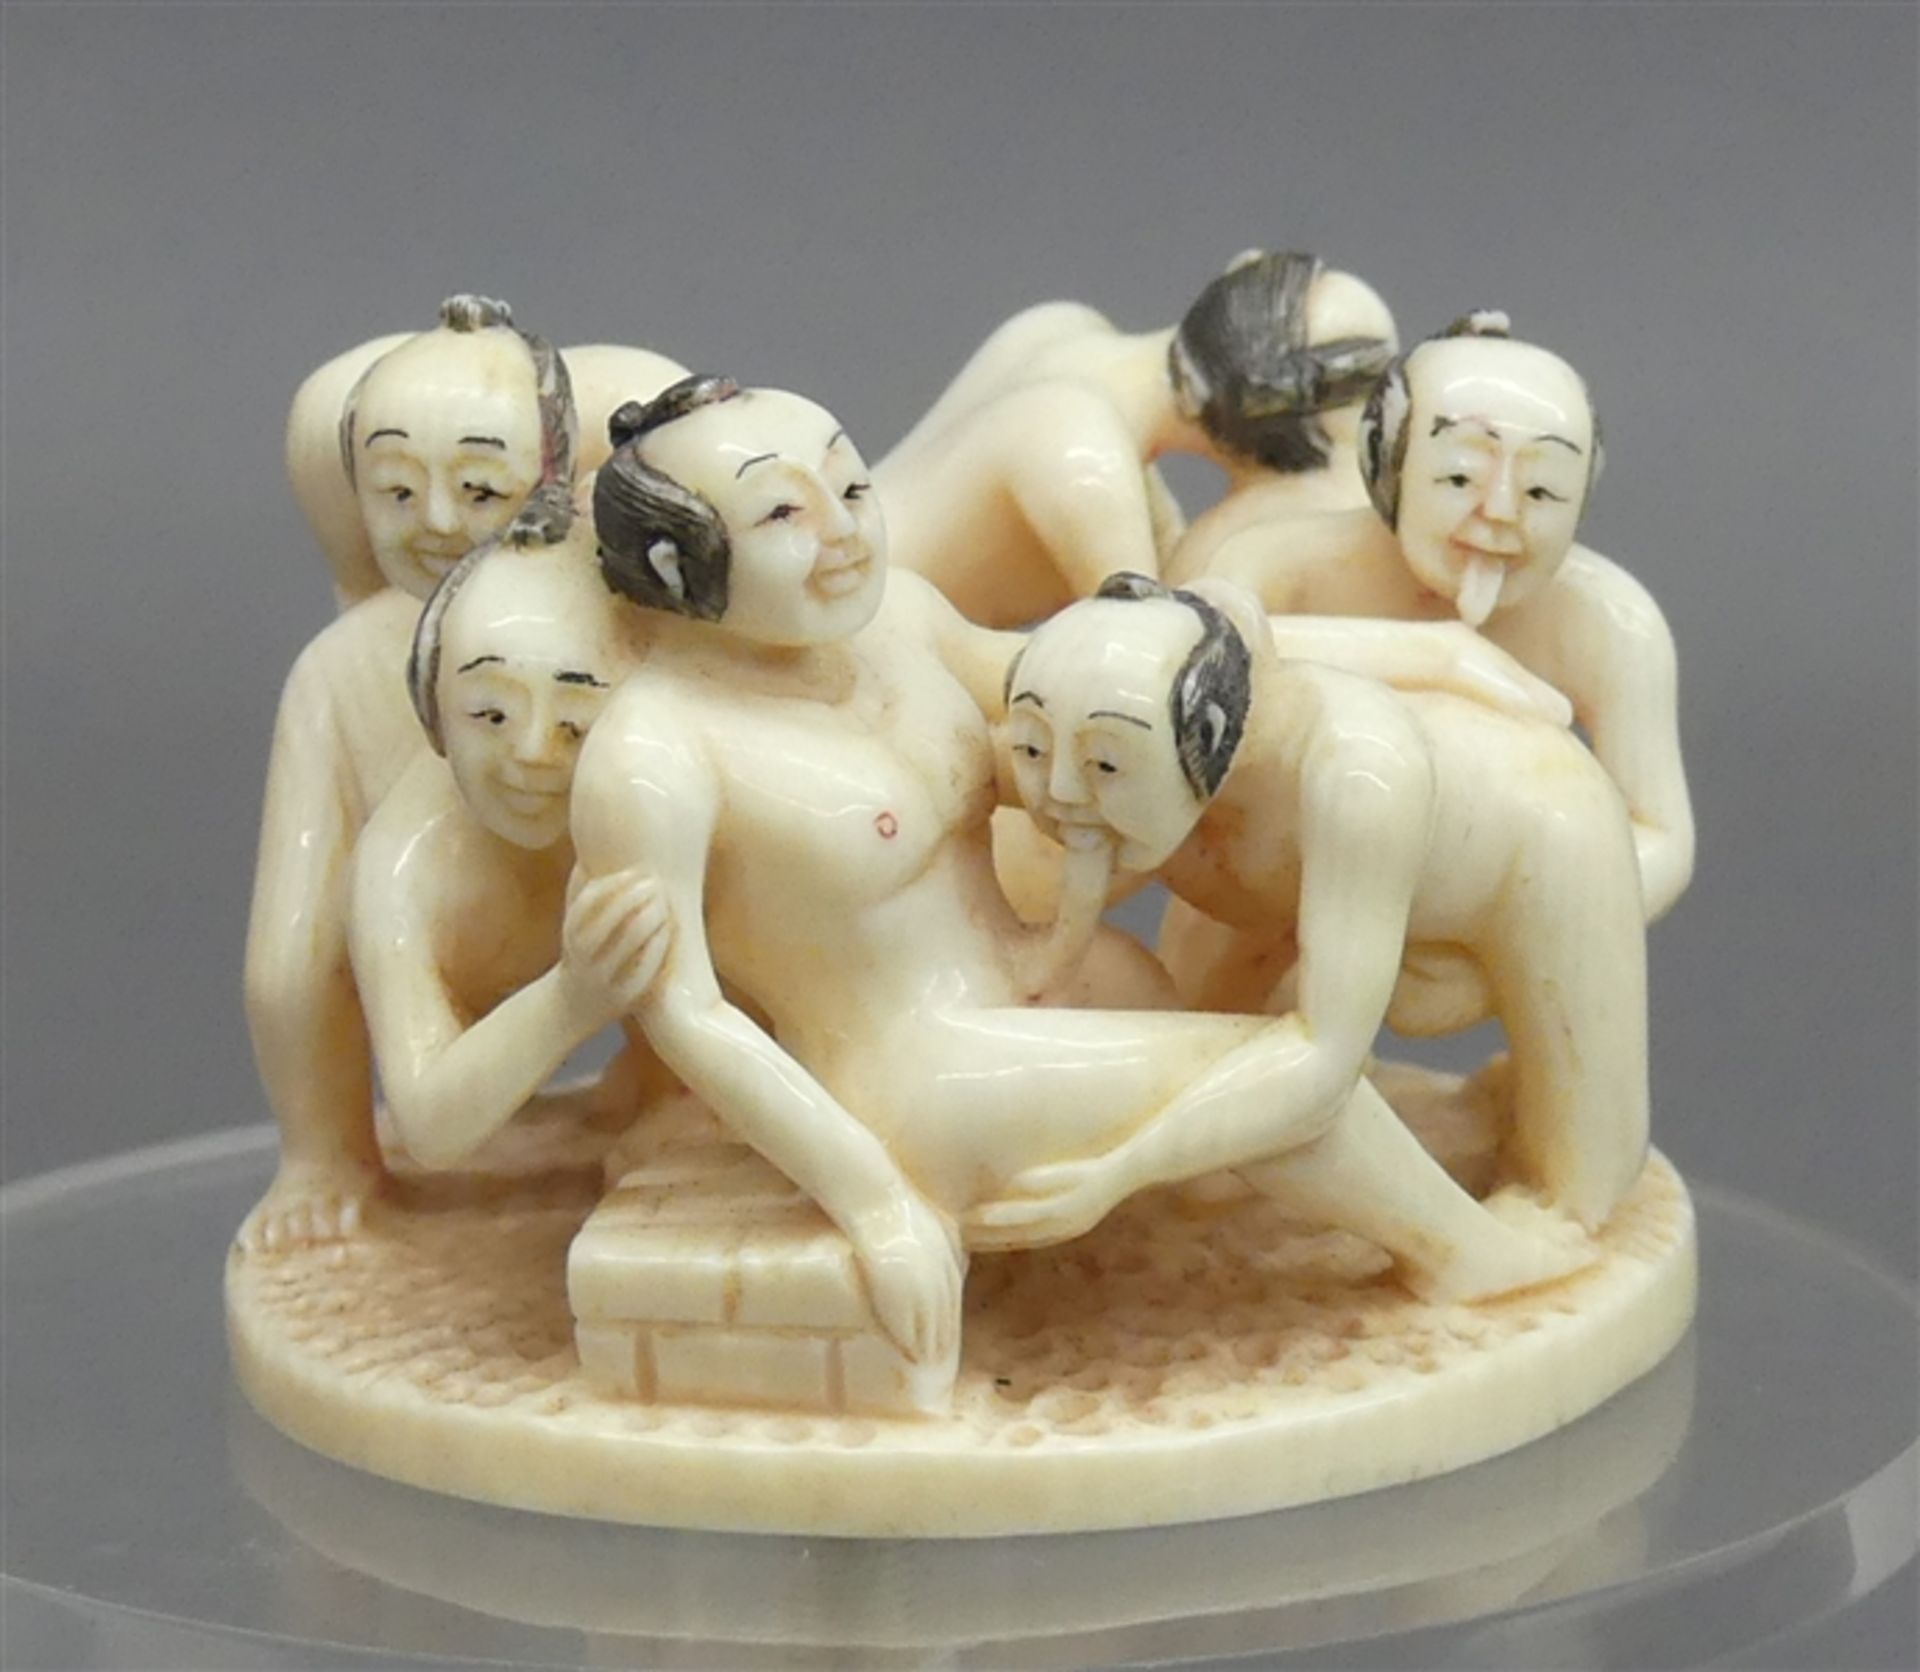 Beinschnitzarbeit Japan, erotische Darstellung, durchbrochen gearbeitet, signiert, d ca. 7 cm, h